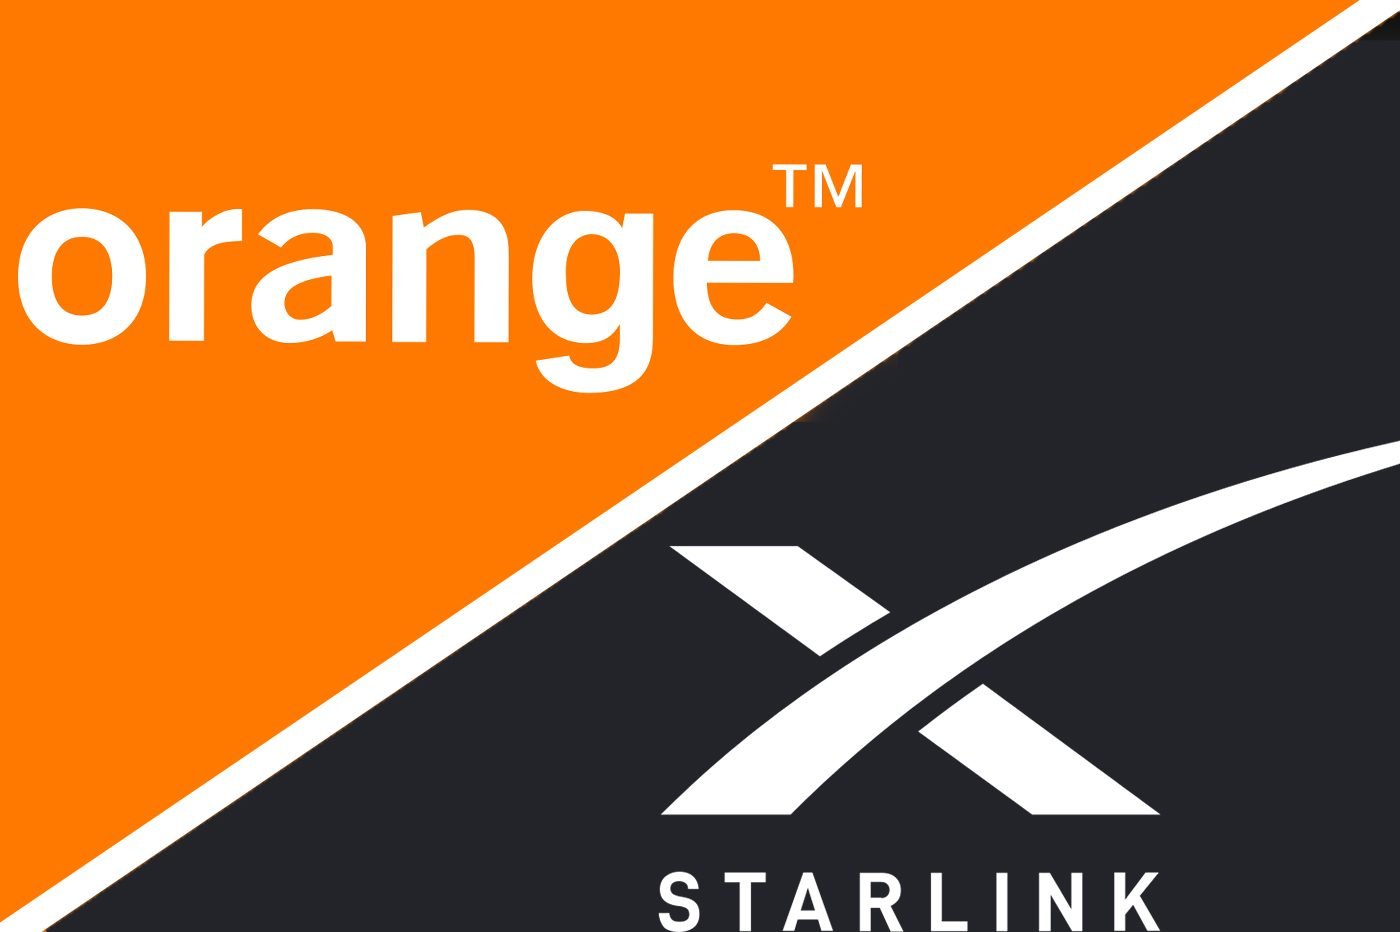 Box 4G Orange : tout ce qu'il y a à savoir sur la nouvelle offre d'Orange